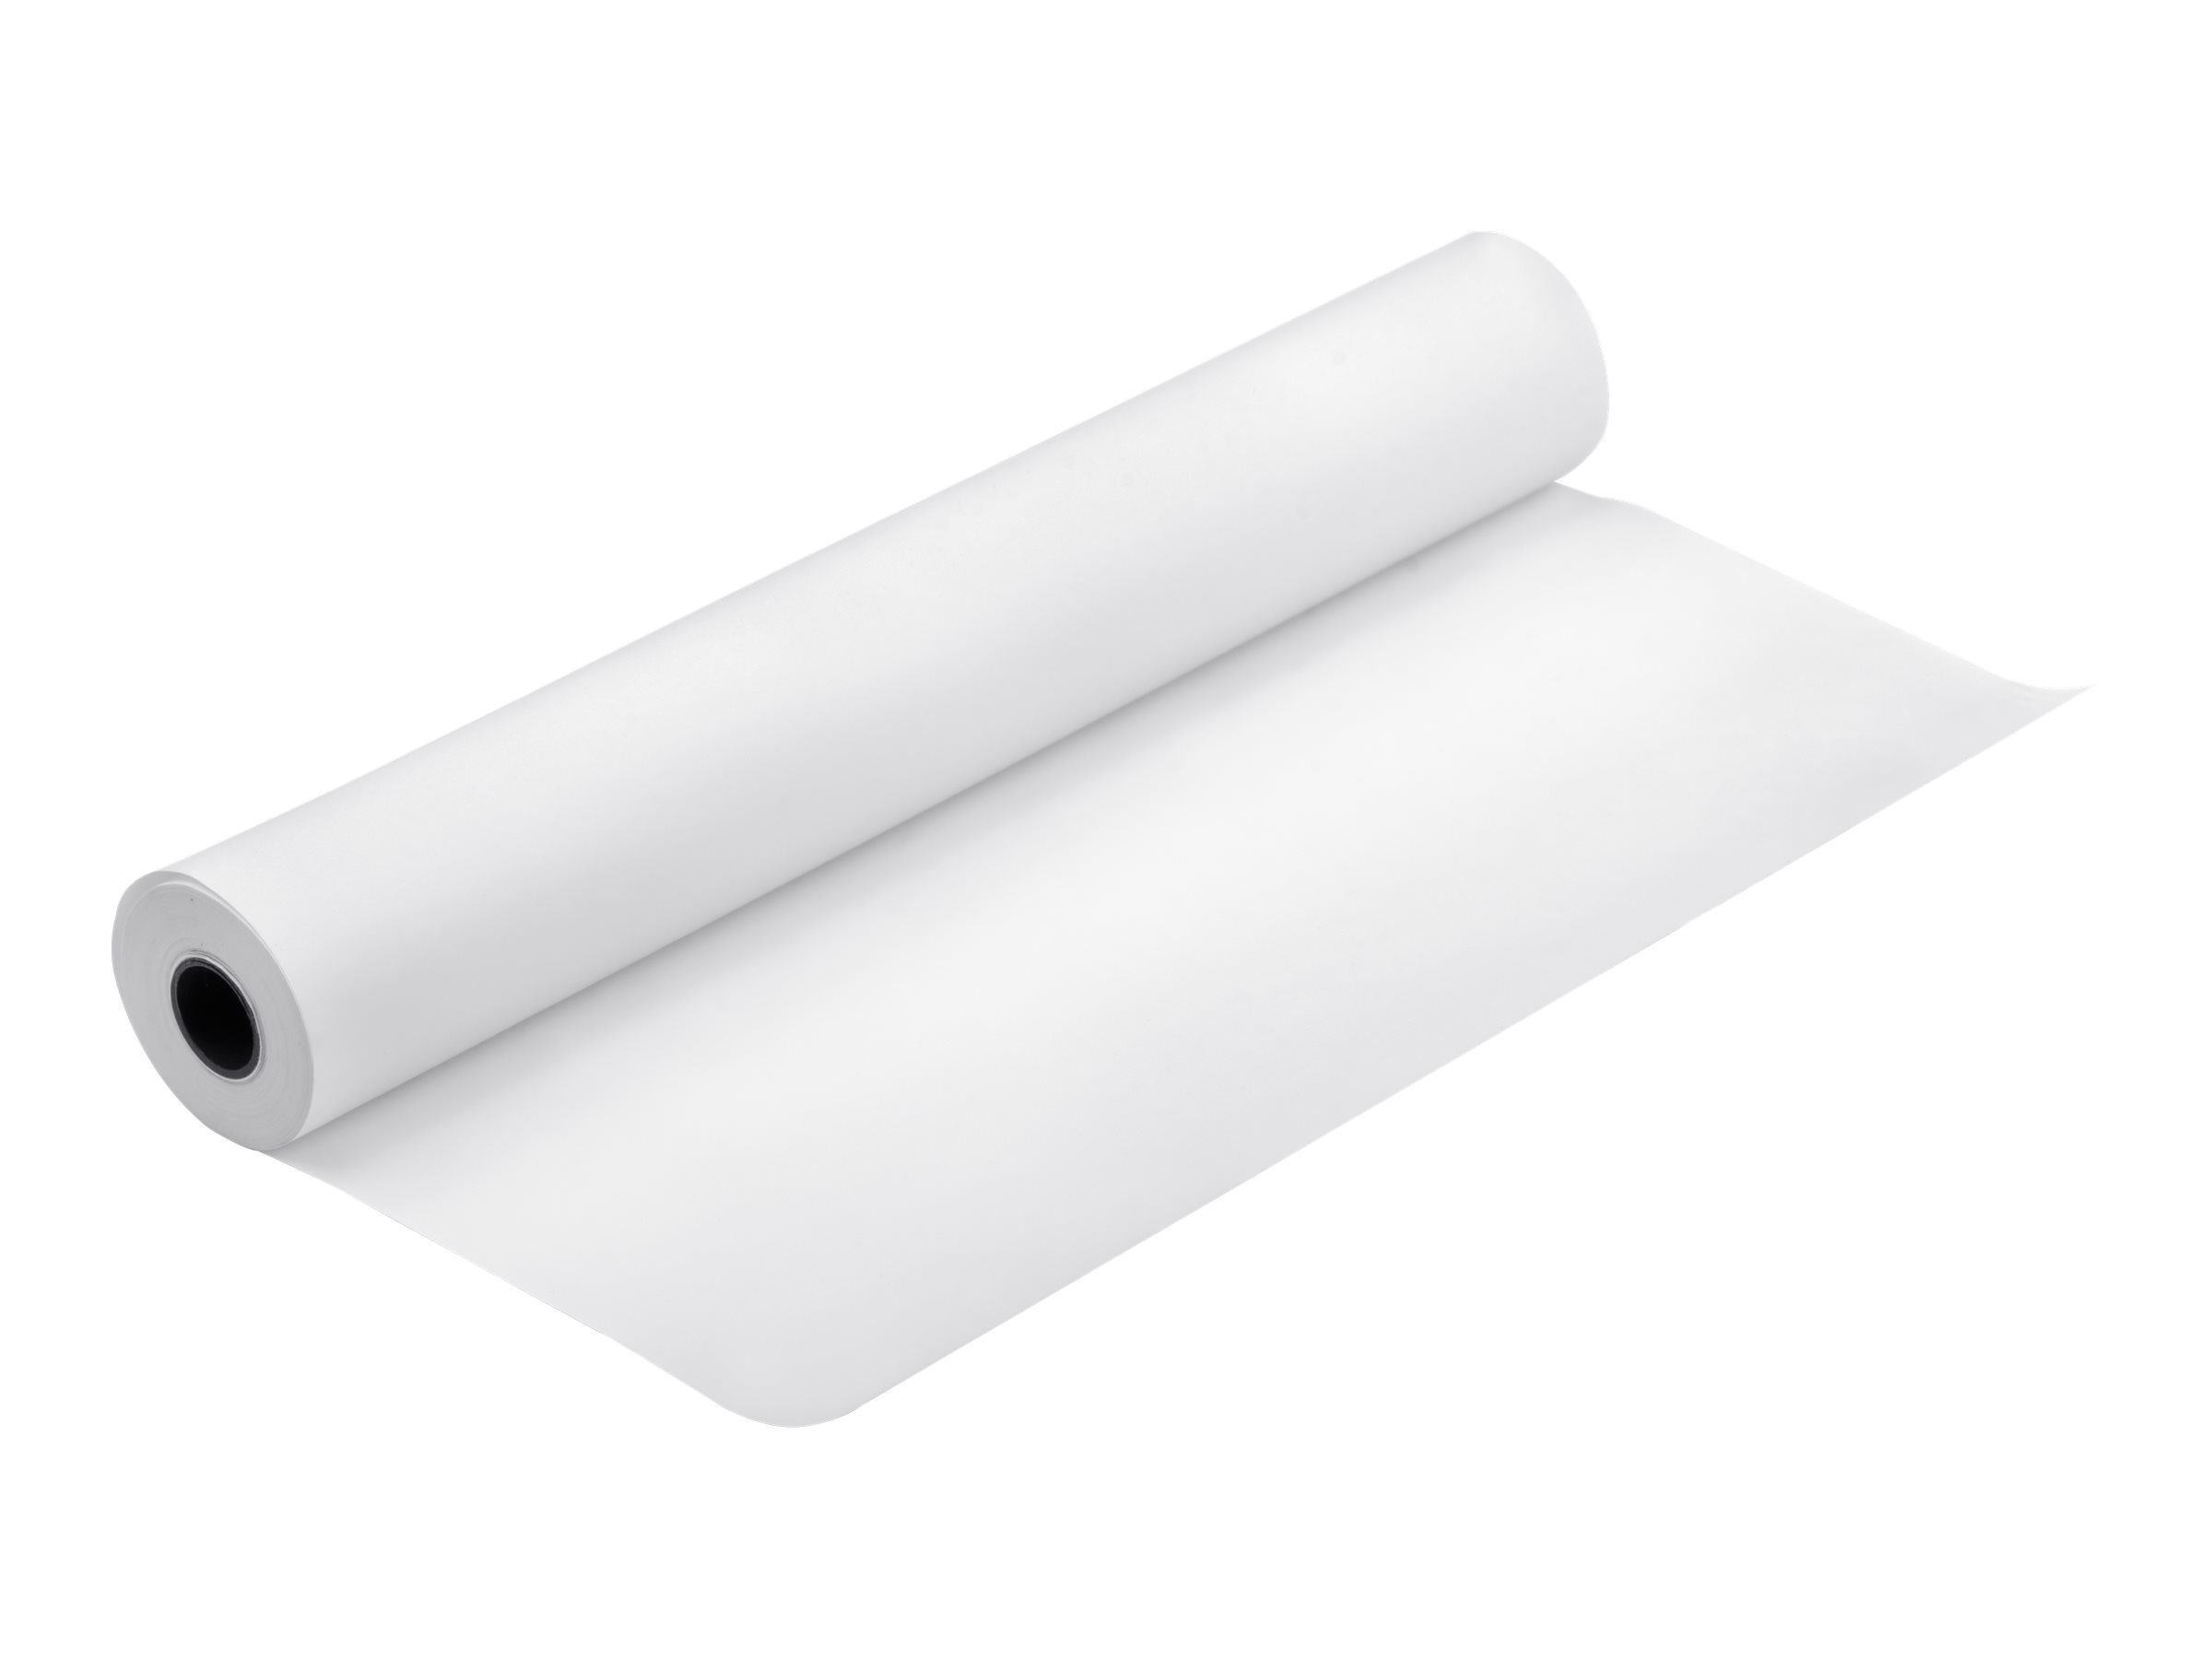 Epson Premium Glossy Photo Paper - Glänzend - harzbeschichtet - Rolle (111,8 cm x 30,5 m)